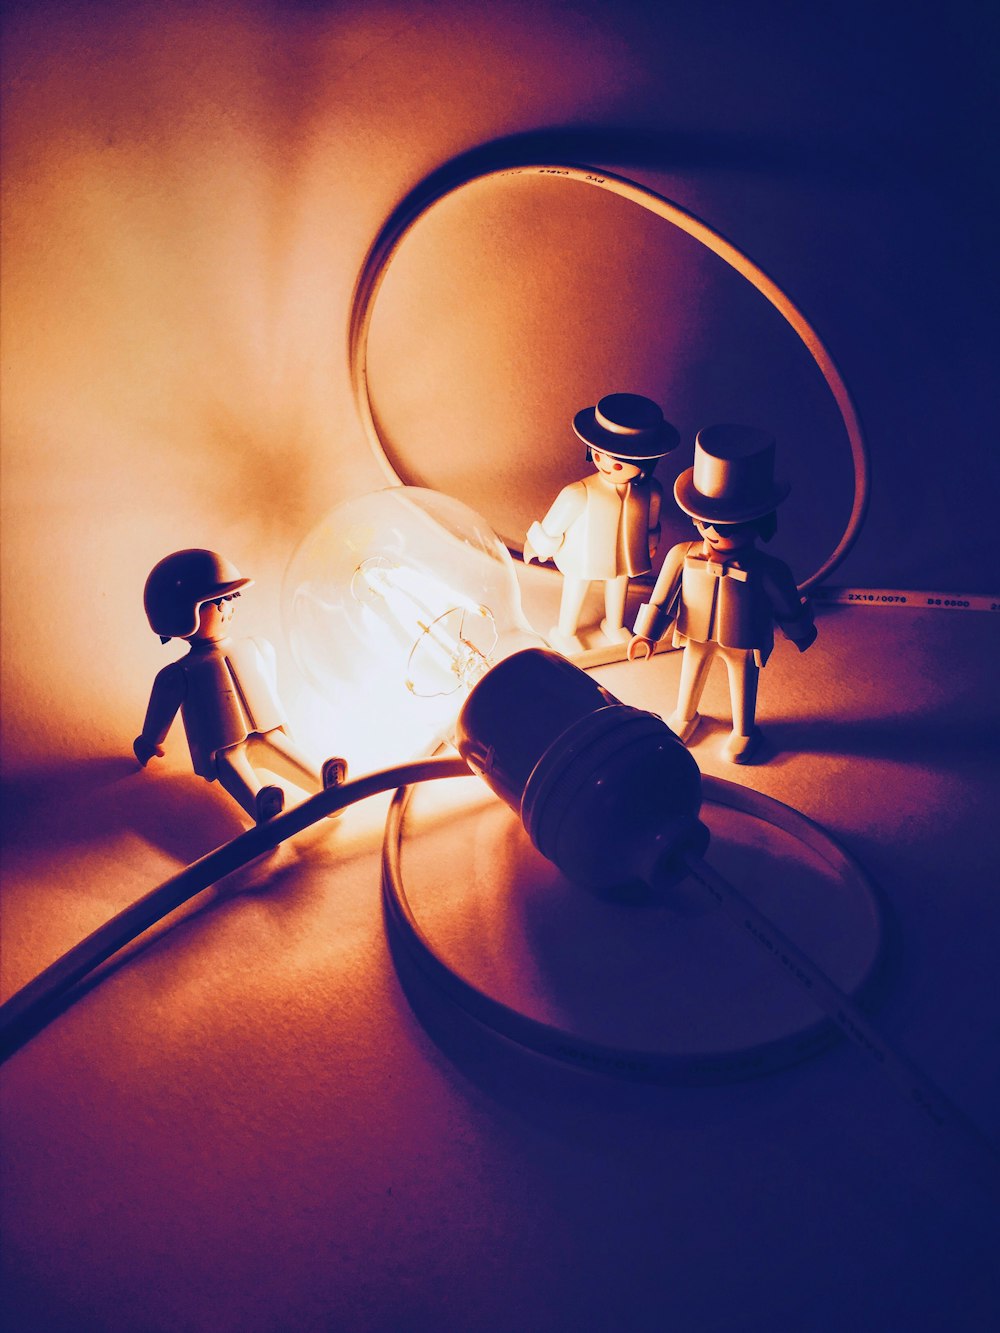 Photographie sélective de trois figurines d’hommes près d’une ampoule allumée